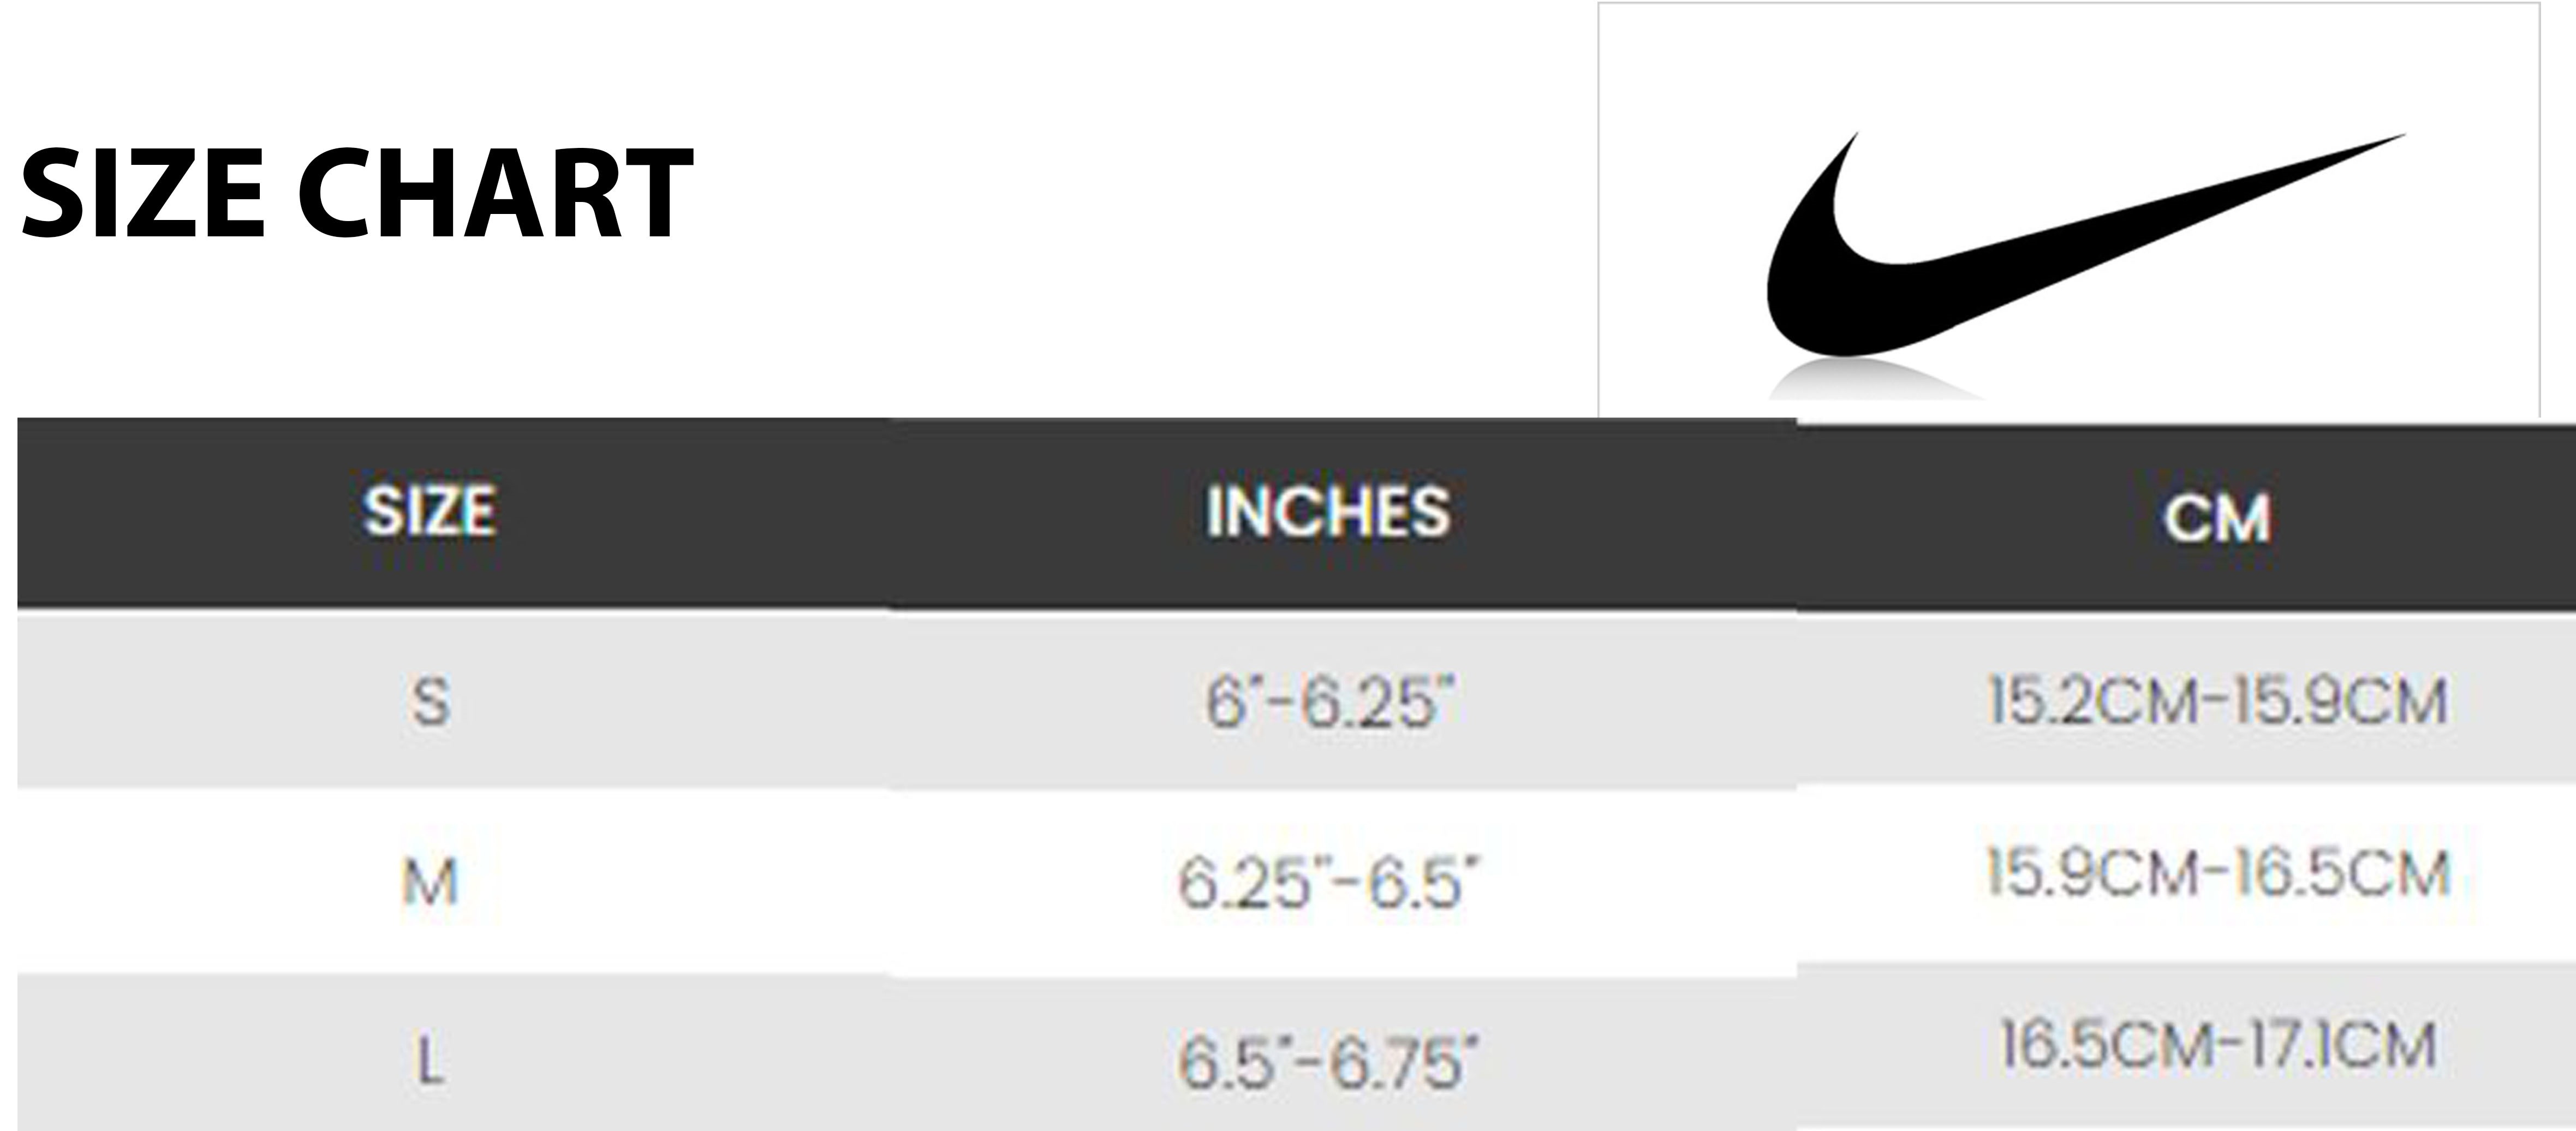 38 размер найк. Размерная сетка Nike. Nike Size Chart. Размерная сетка Nike Hyperwarm. Размеры Nike.